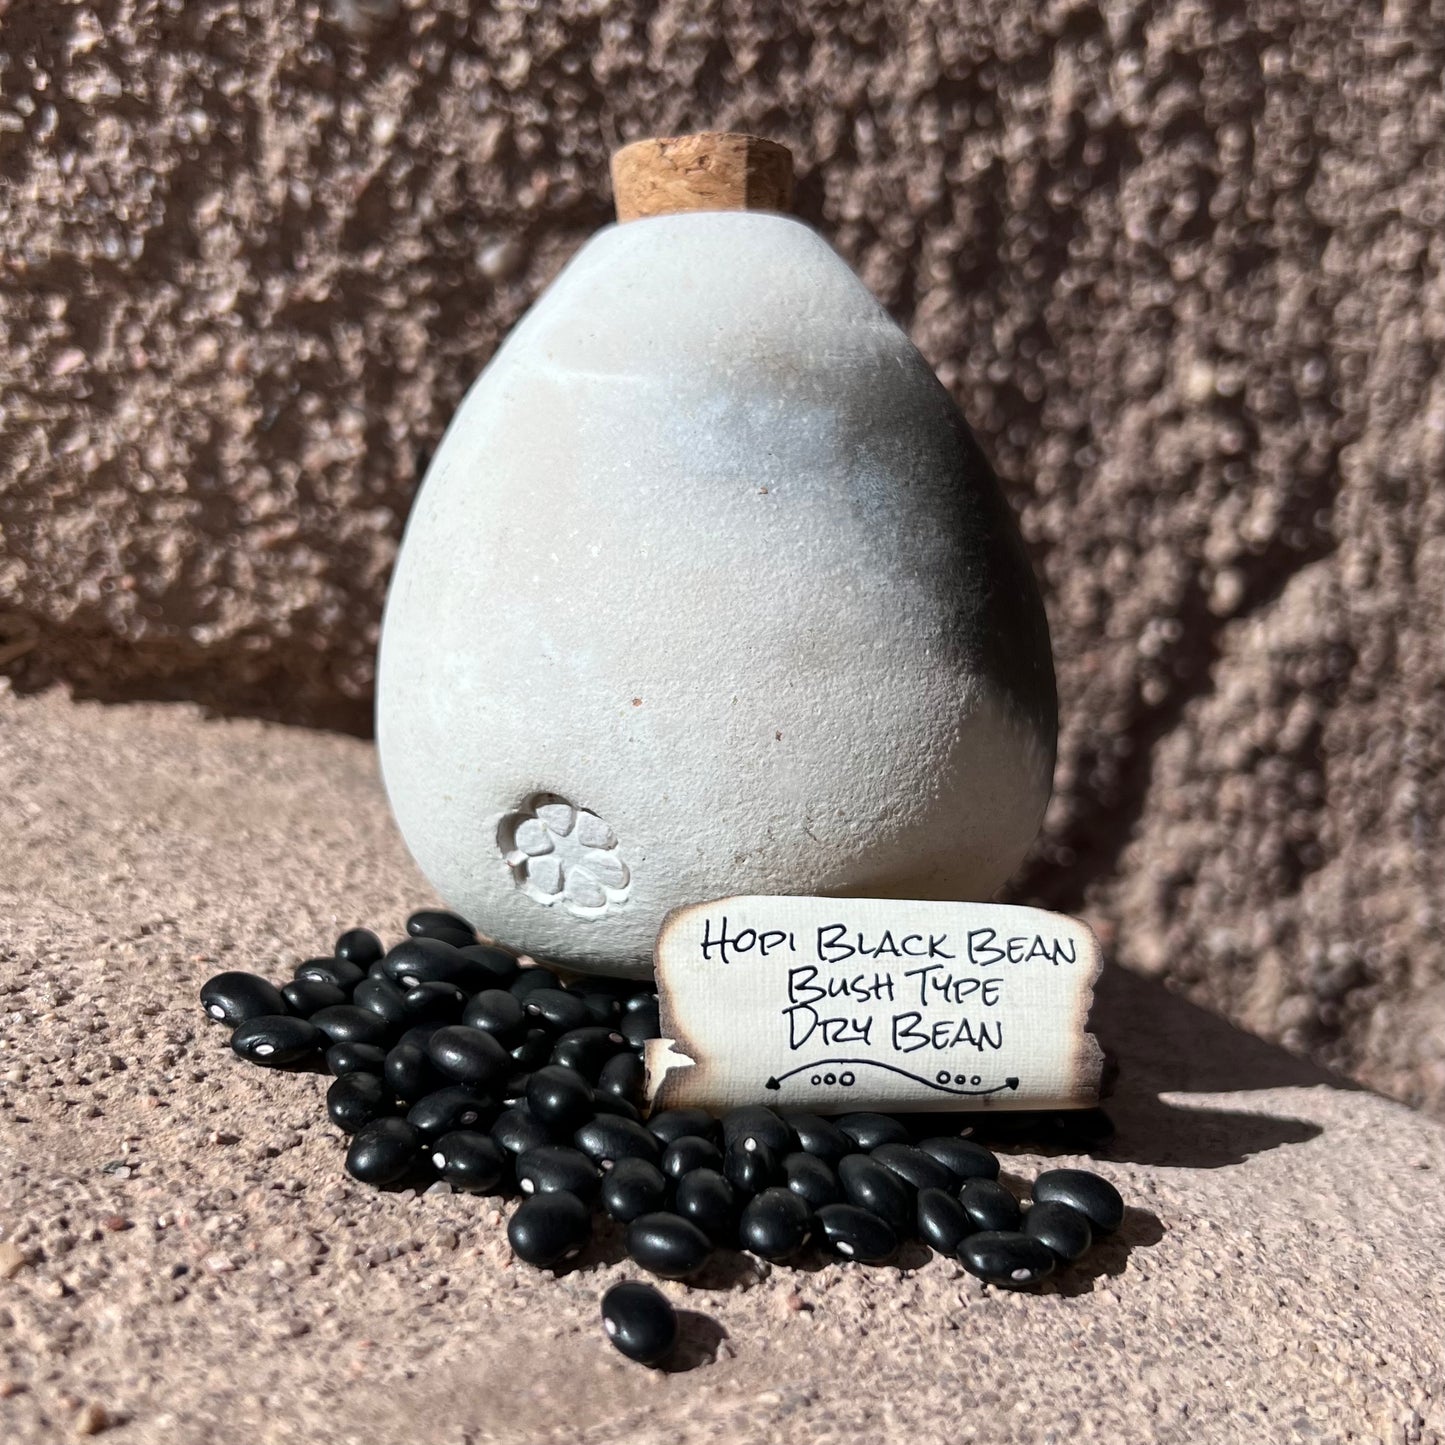 Hopi Black Bean, Half- Runner, Dry Bean